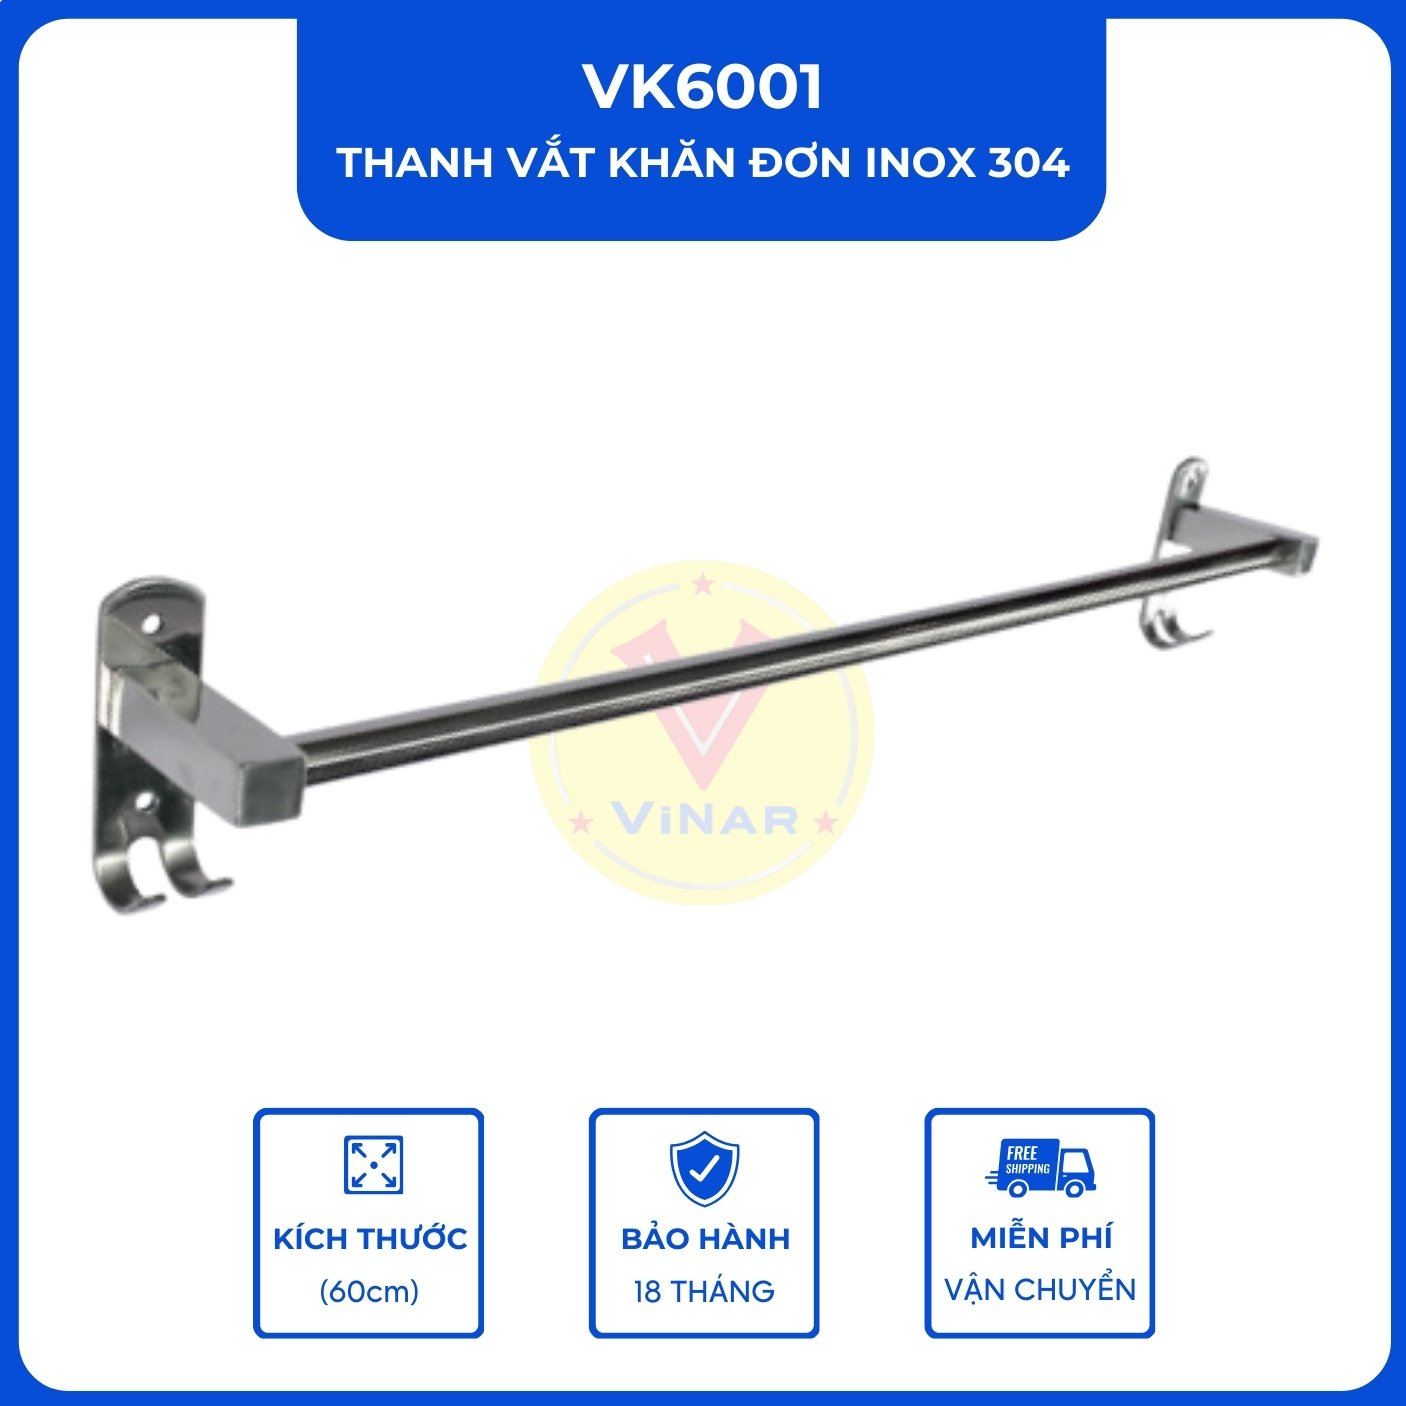 thanh-vat-khan-don-inox-304-VK6001